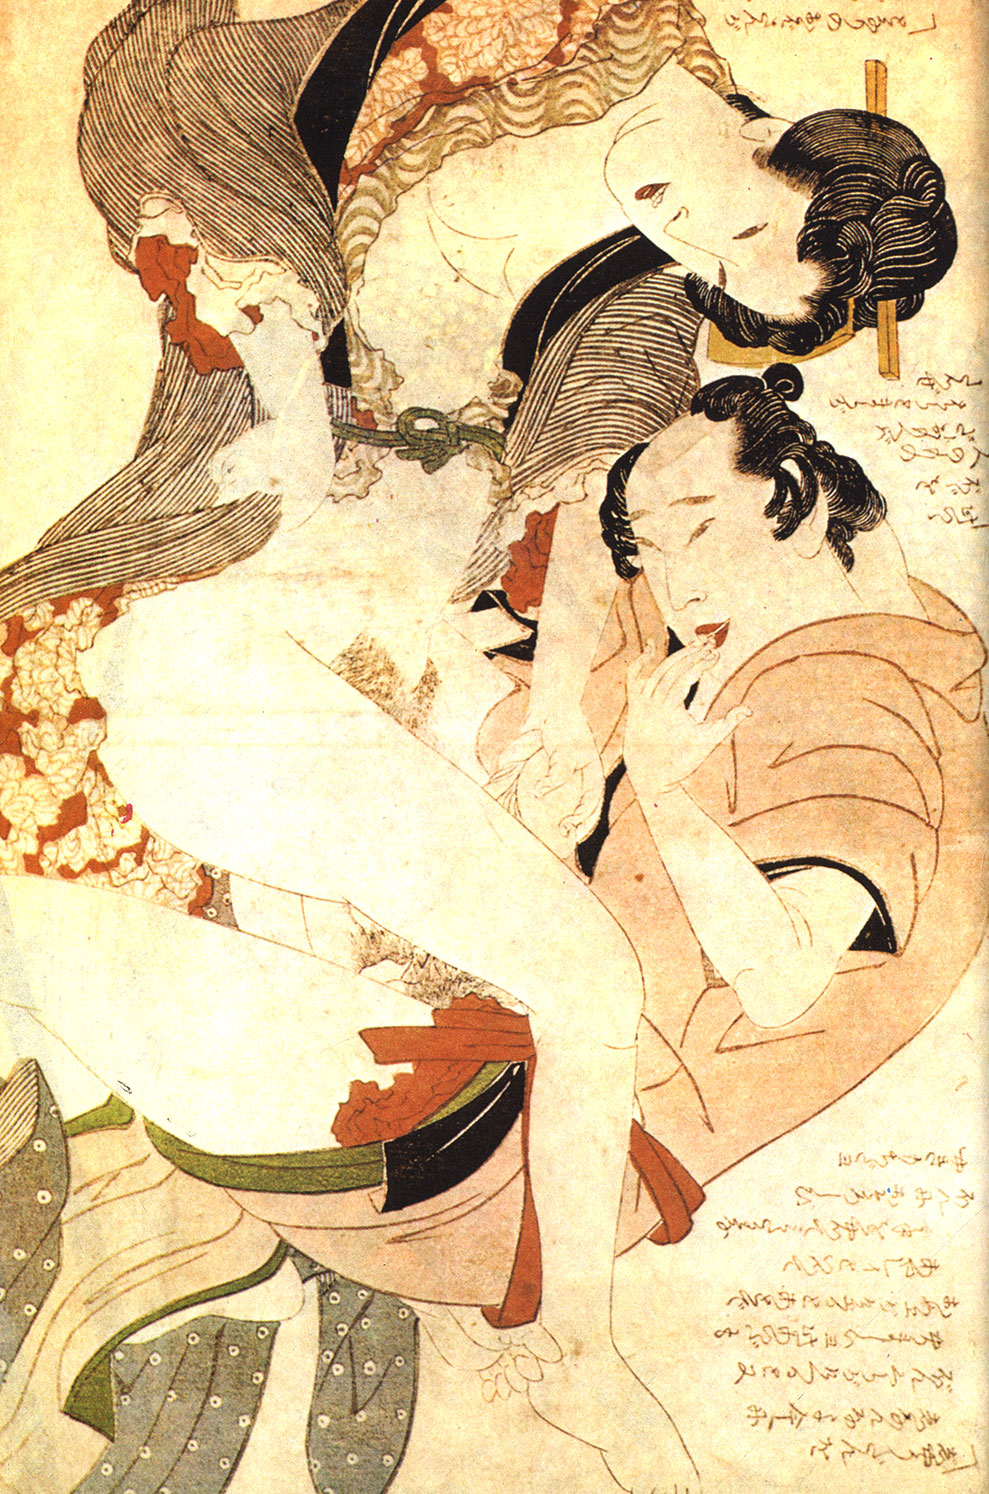 Рис. 80. Три картины великого японского художника Хокусая (1760 - 1849) из серии 'Любящие пары' (около 1810 г.)